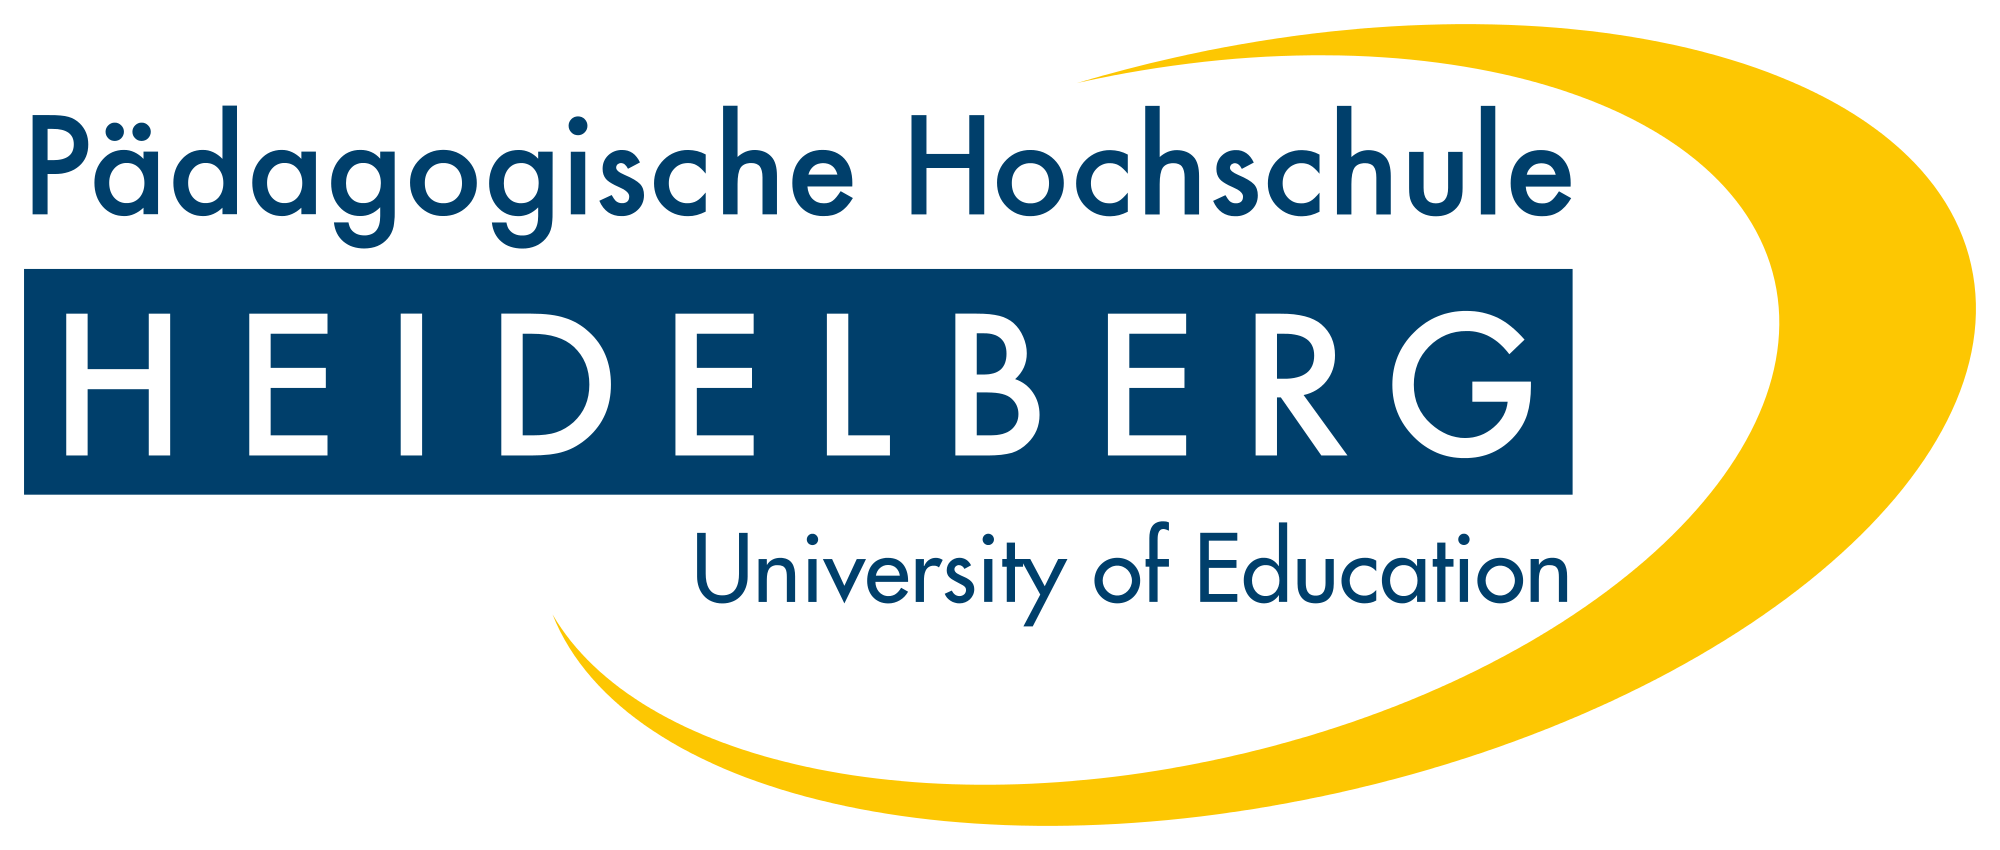 P dagogische Hochschule Heidelberg University of Education 